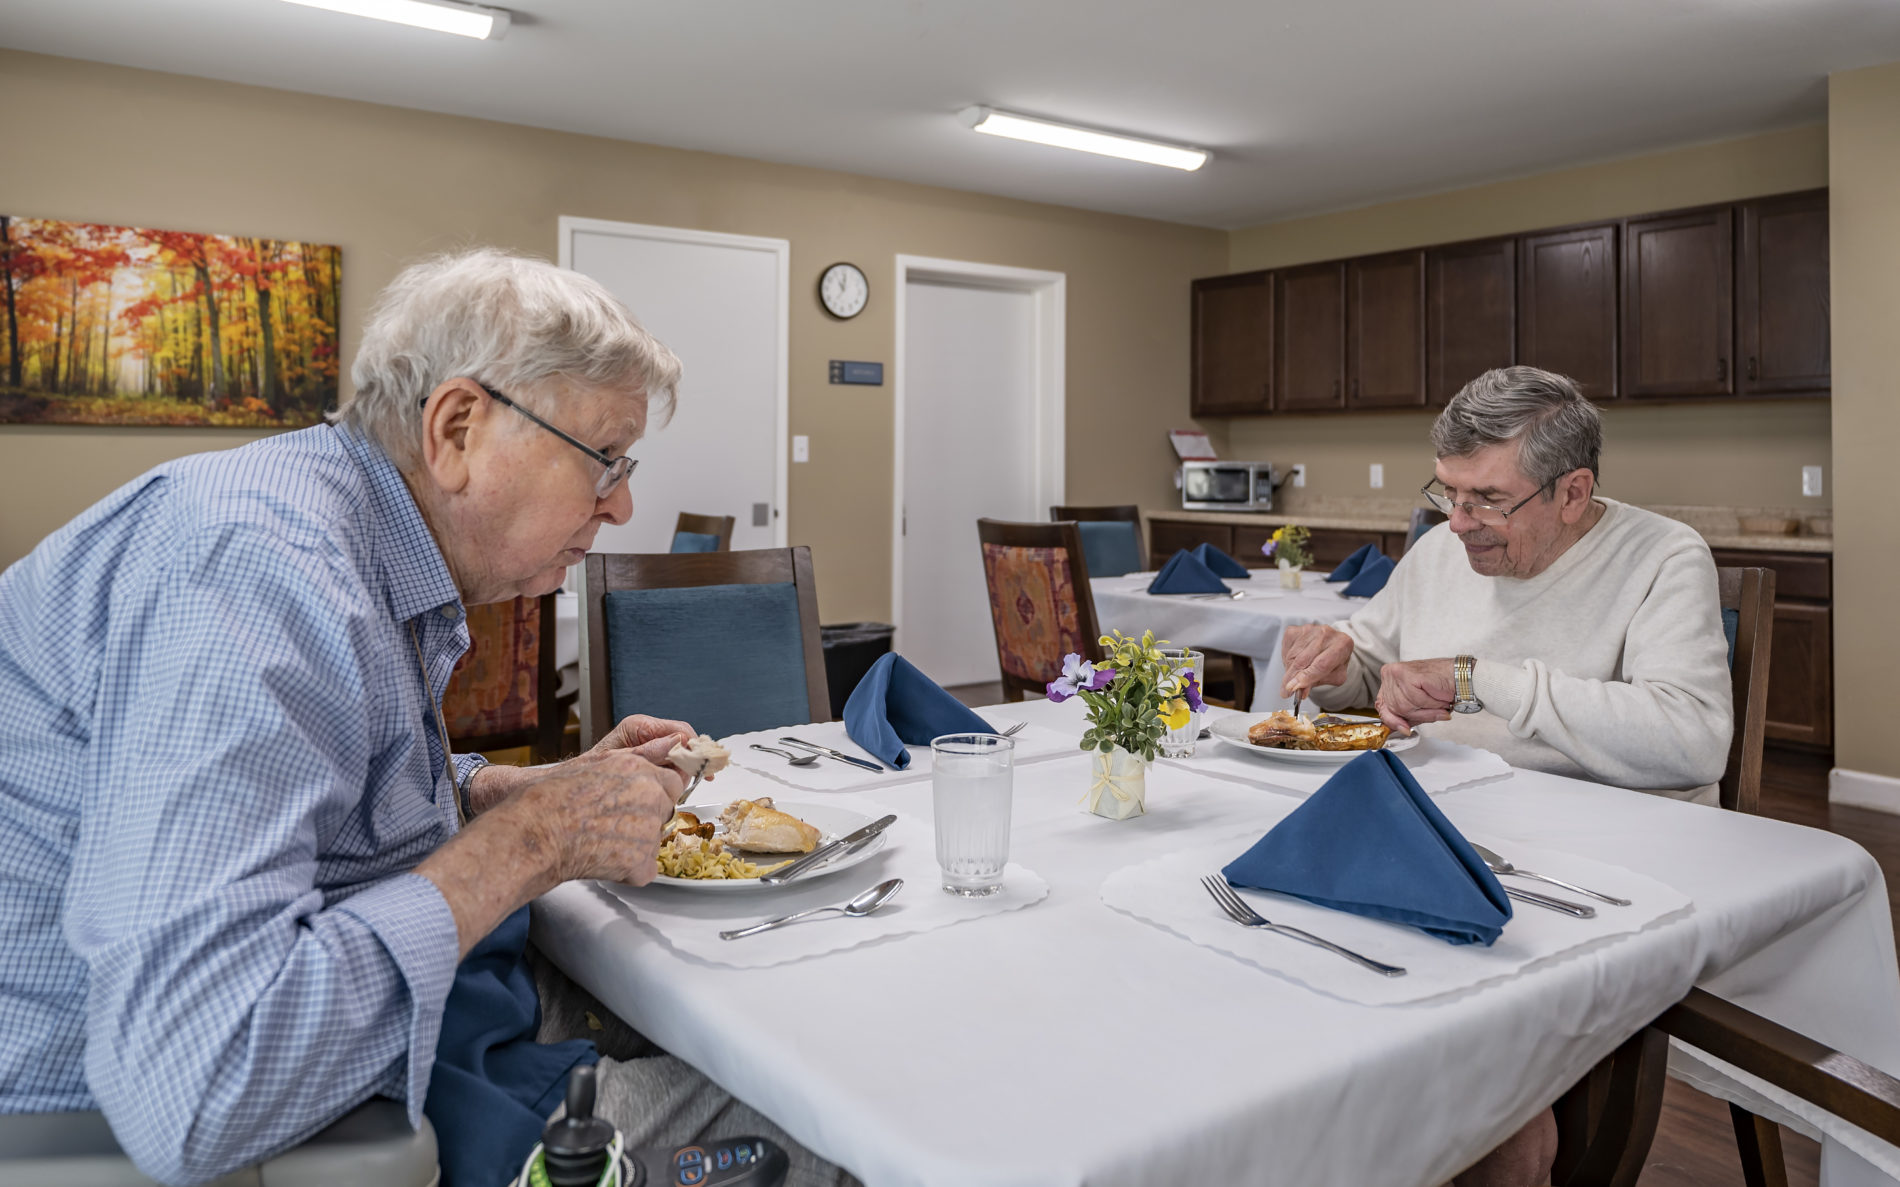 Two senior men eating together